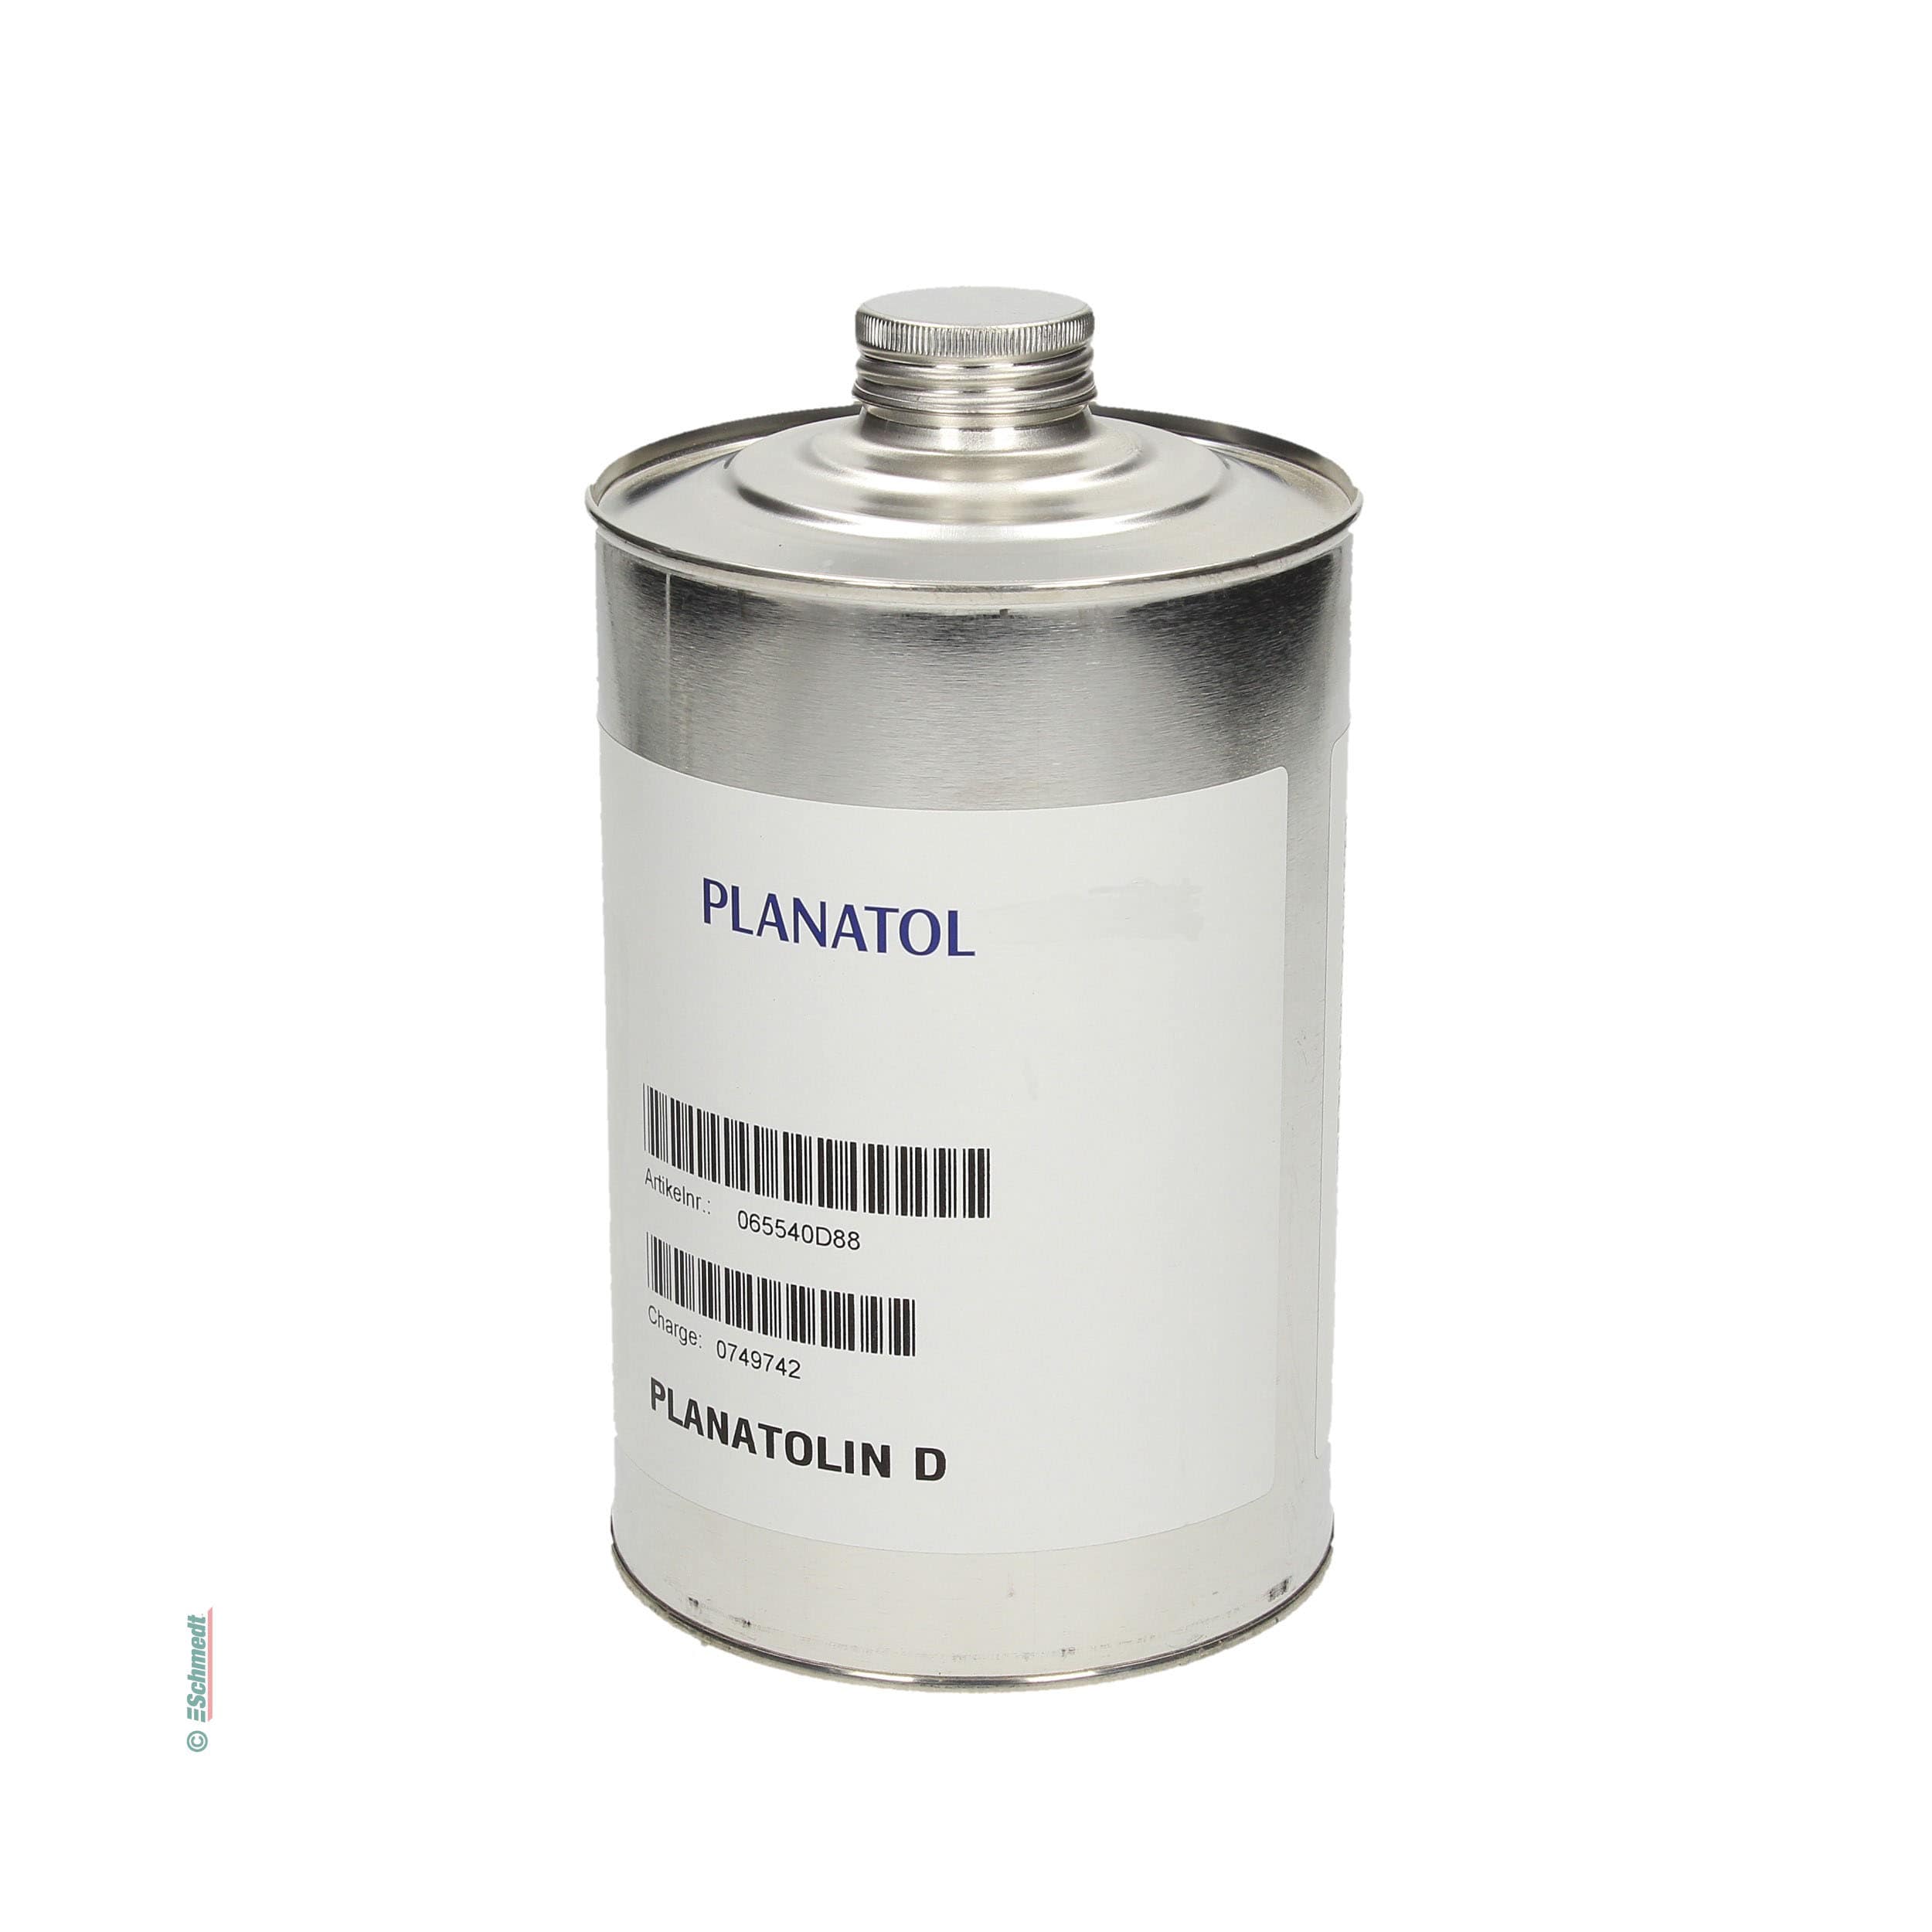 Planatolin D - Contenido Bote / 0,88 kg - Aplicación: Detergente para eliminar los restos de colas de las máquinas, aparatos o pinceles...